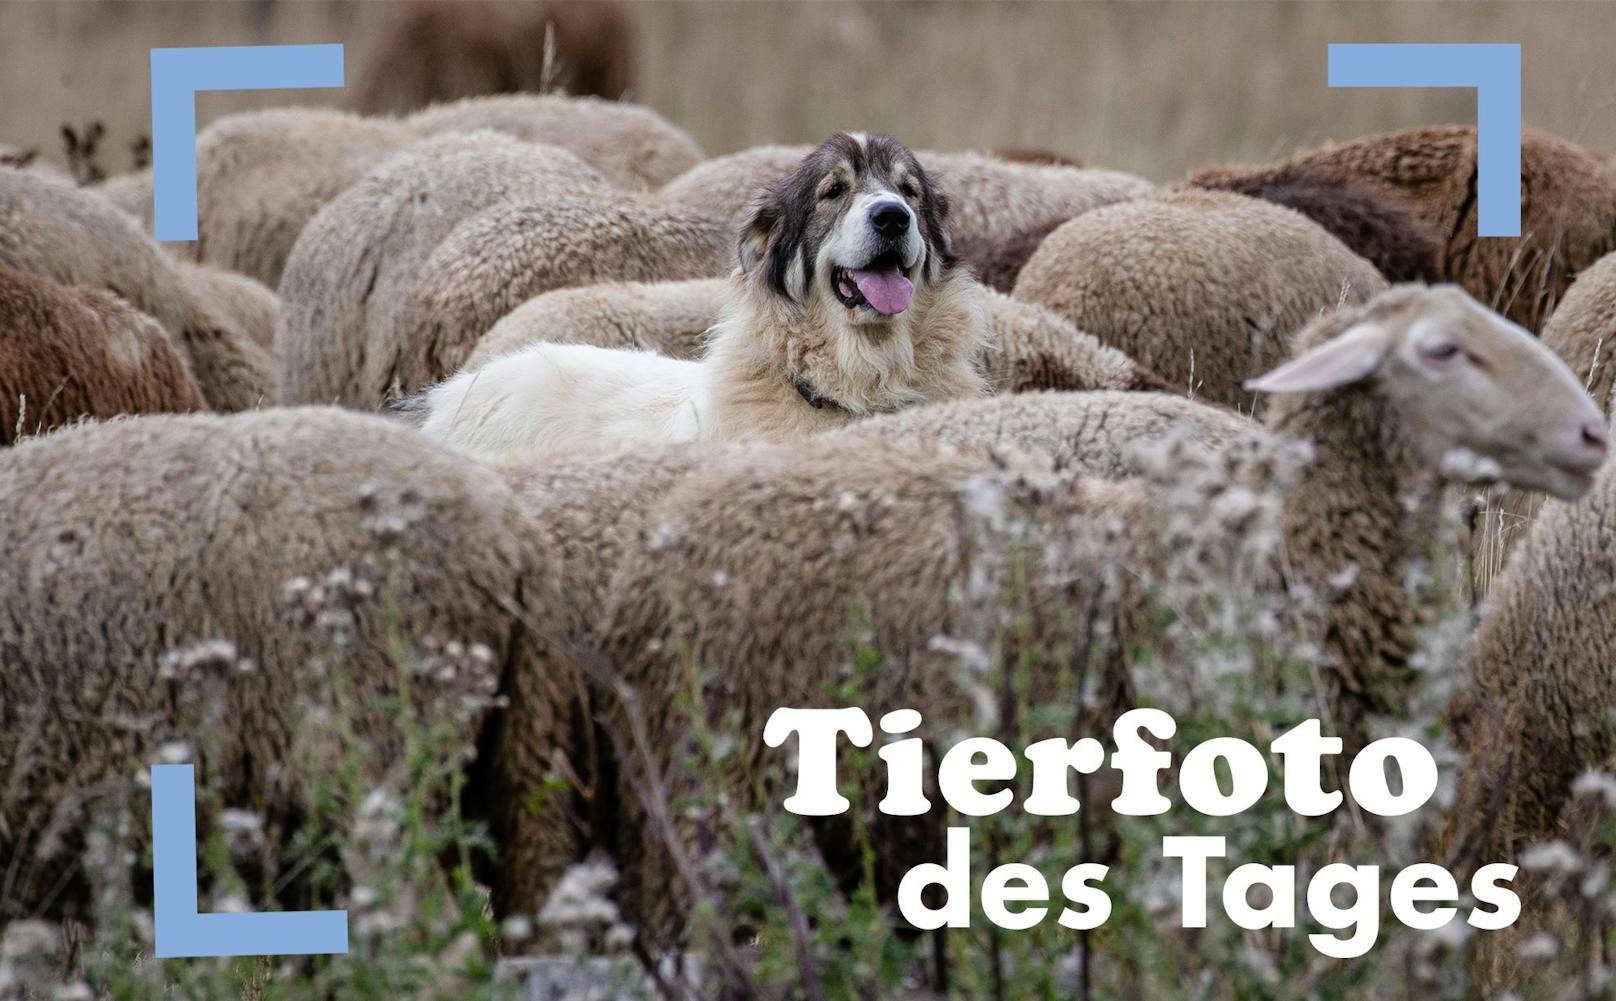 G'scheit! Immer mehr Landwirte setzen auf Herdenschutzhunde für ihre Schafe und Ziege. So bleibt der Wolf fern. :)